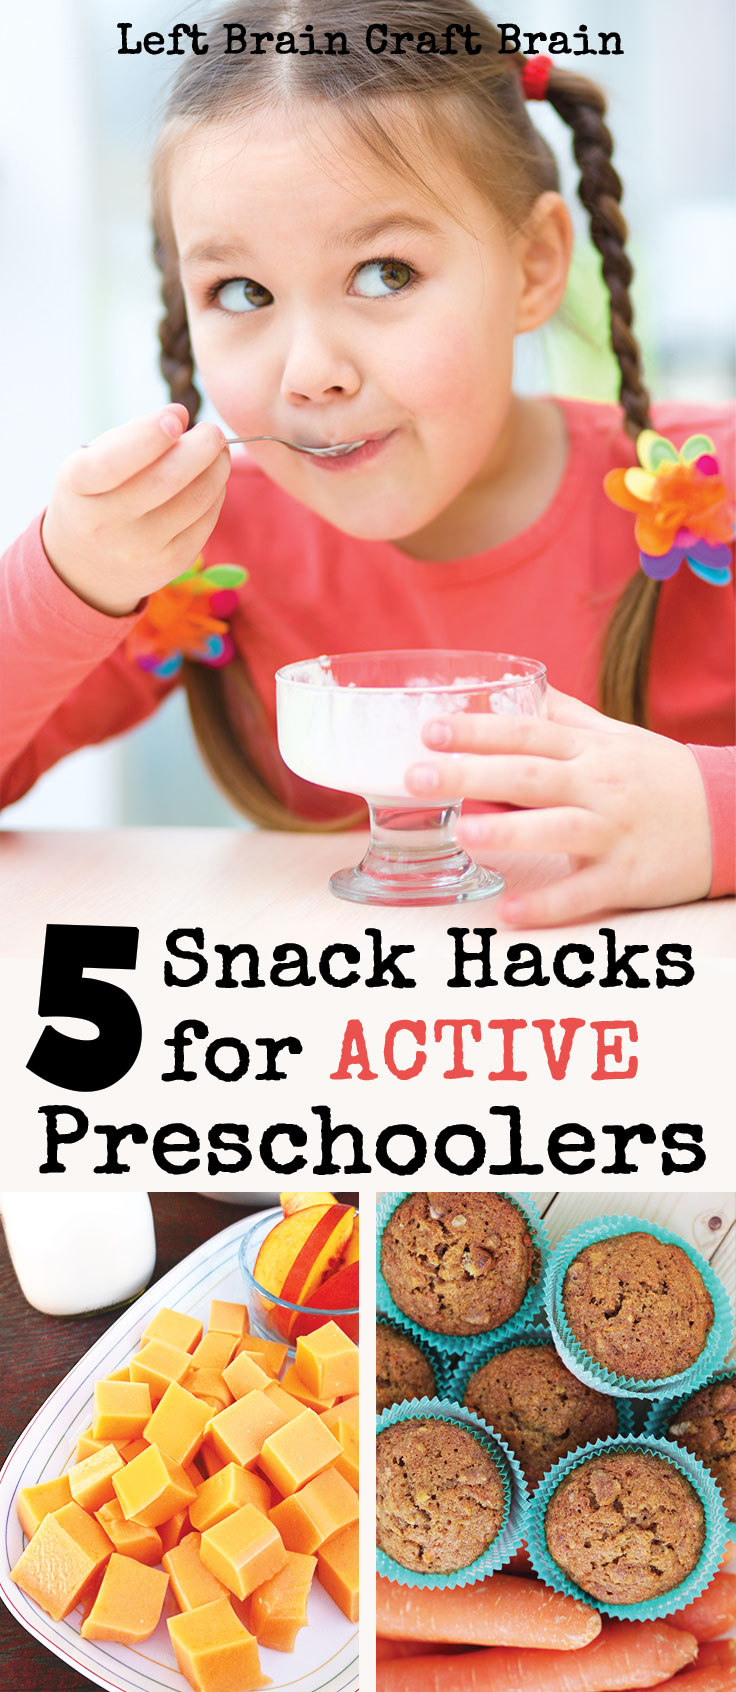 5-Easy-Snack-Hacks-For-Active-Preschoolers-Left-Brain-Craft-Brain-2